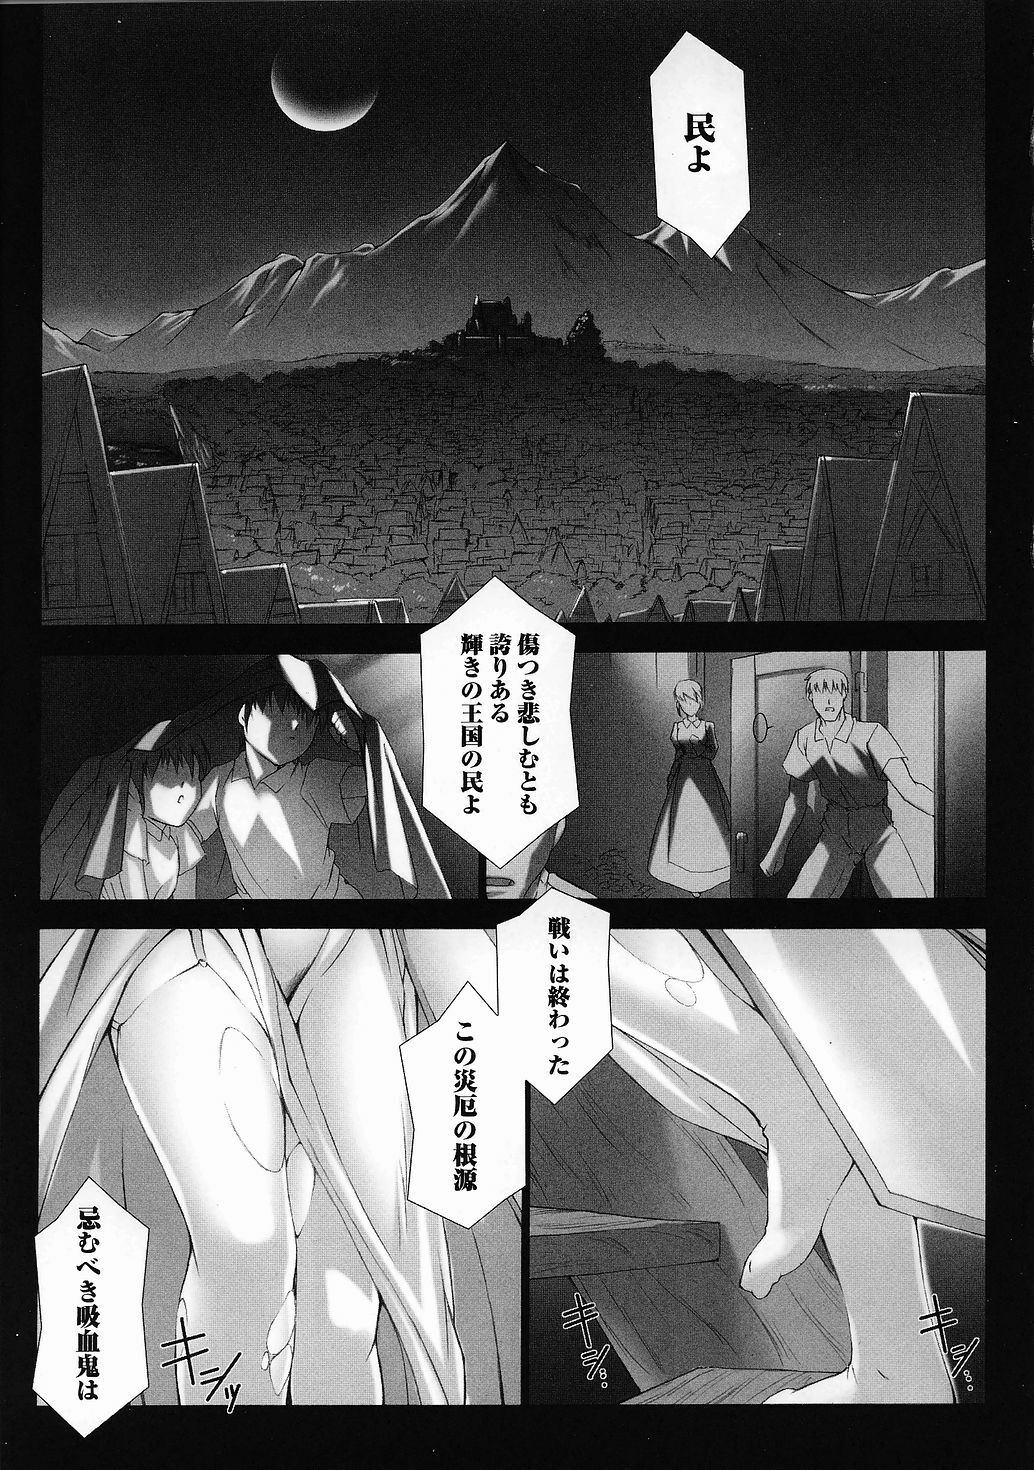 [Anthology] Tatakau Heroine Ryoujoku Anthology Toukiryoujoku 28 page 7 full